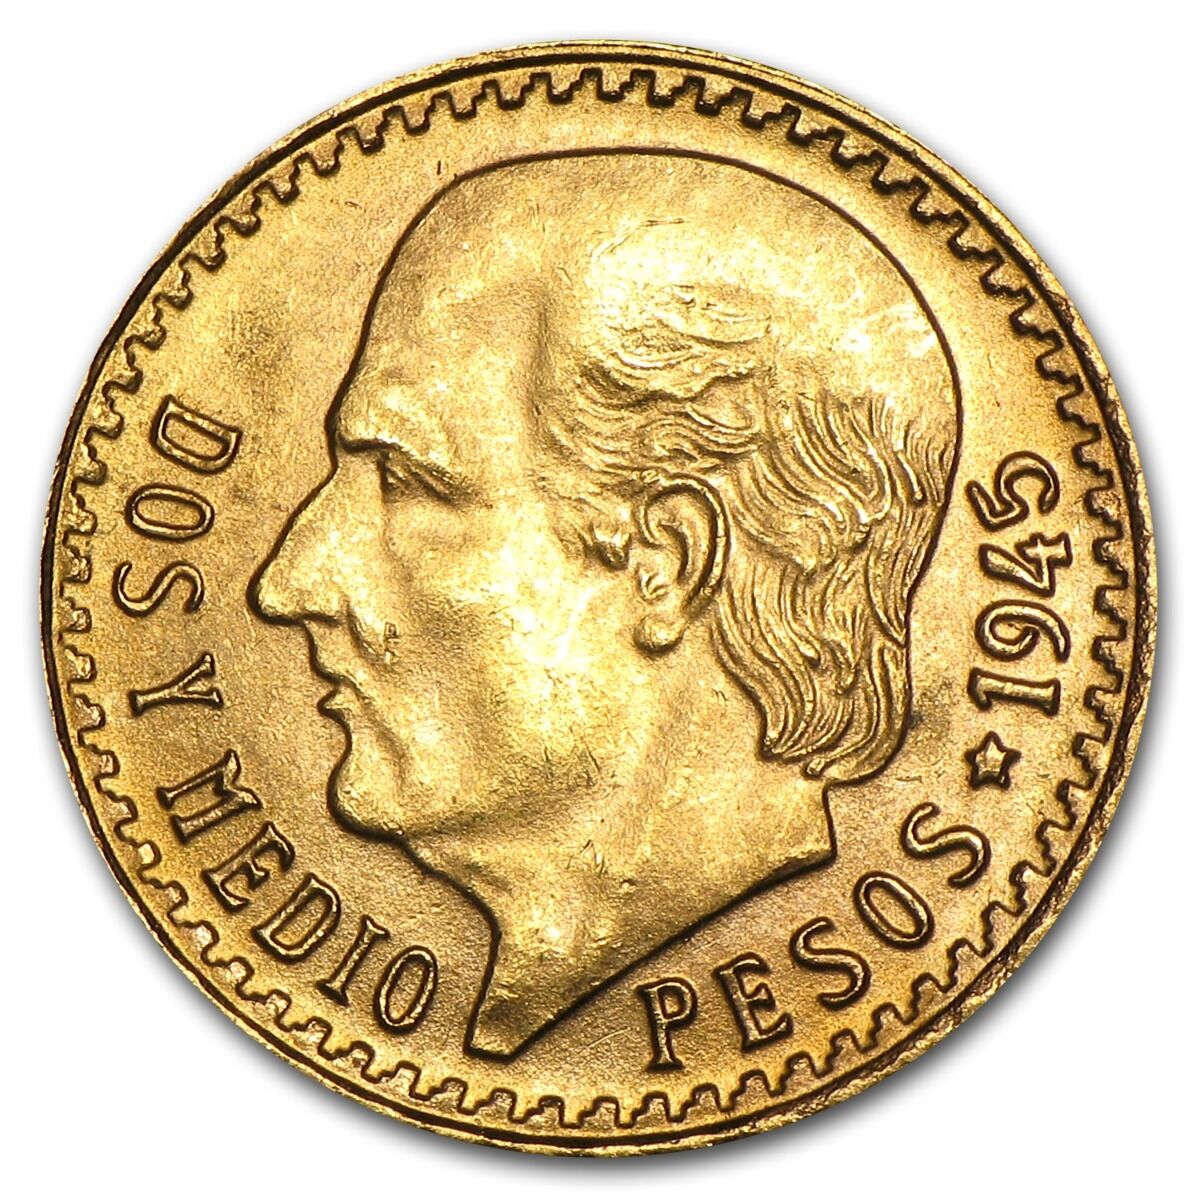 Mexican 2 1/2 Pesos Gold Coin - Random Year Coin - SKU #1047